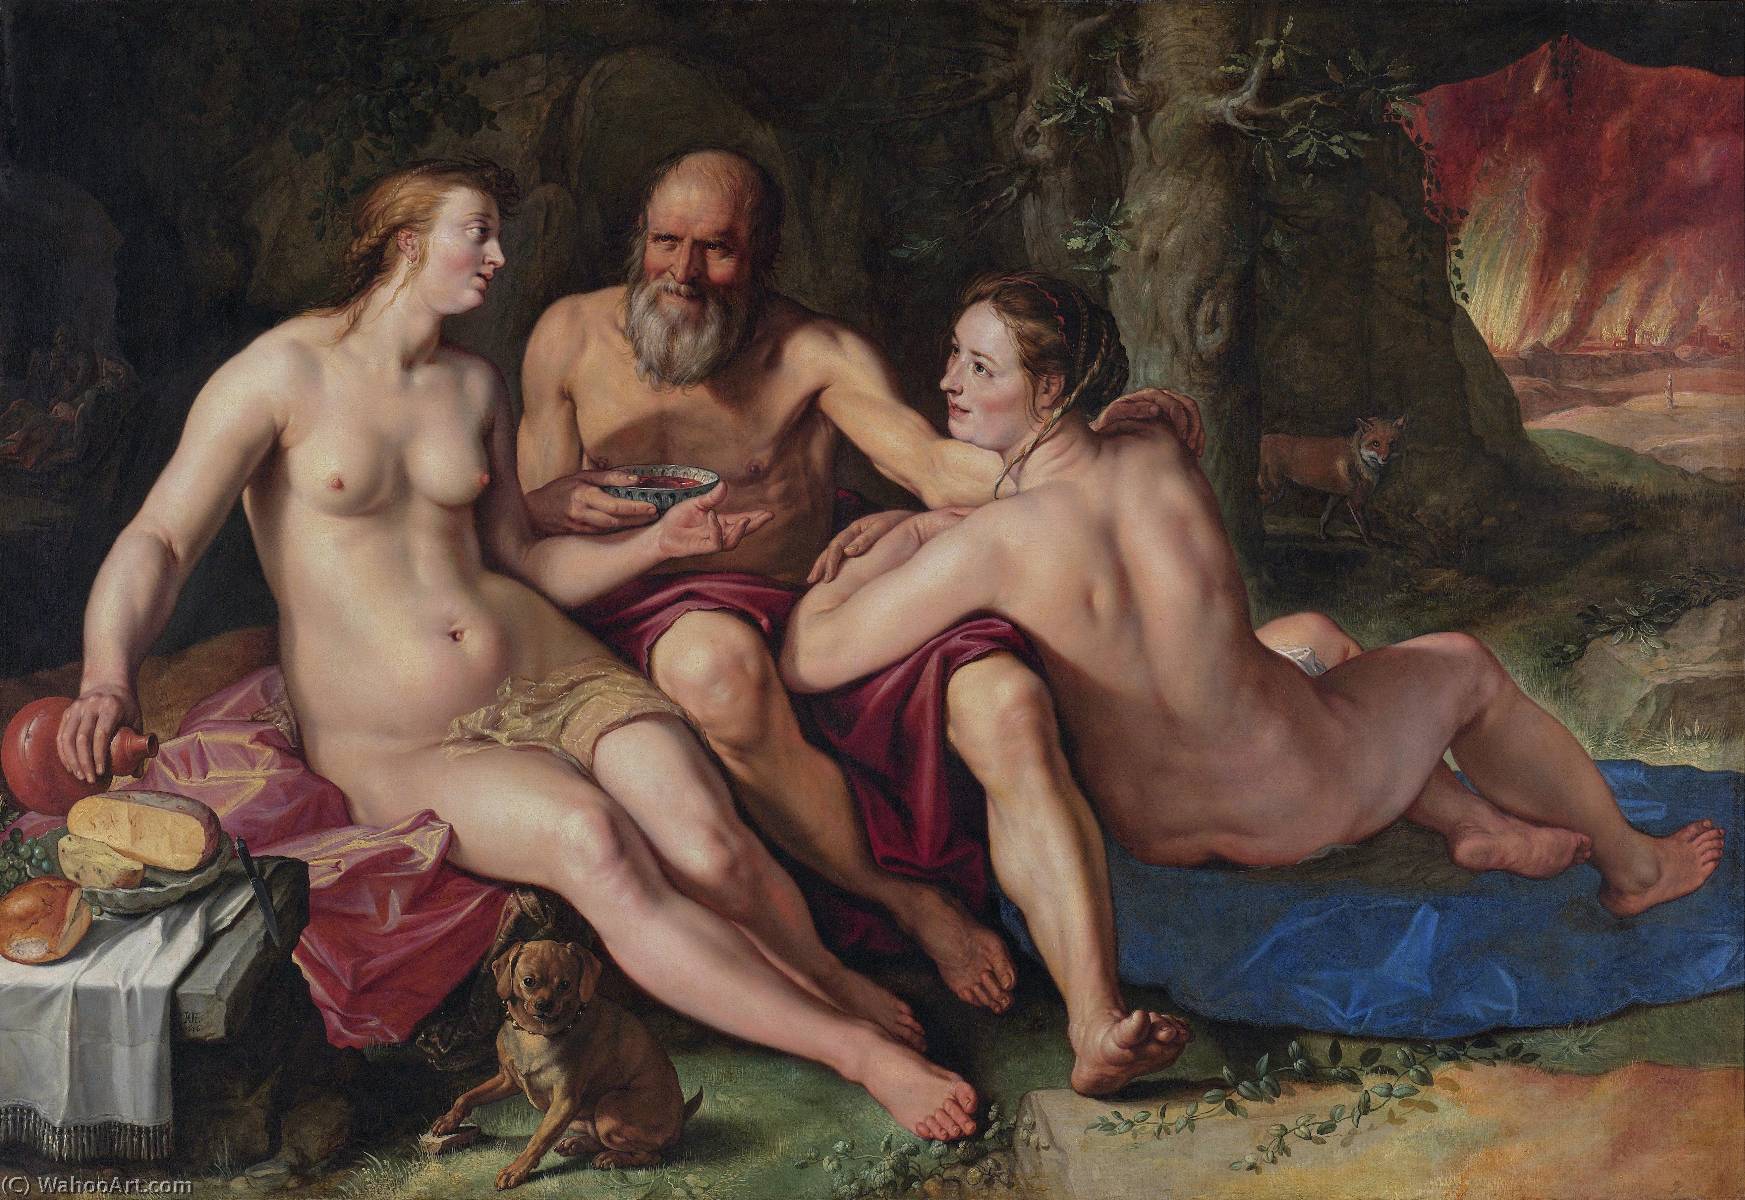 WikiOO.org - אנציקלופדיה לאמנויות יפות - ציור, יצירות אמנות Hendrik Goltzius - Lot and his daughters